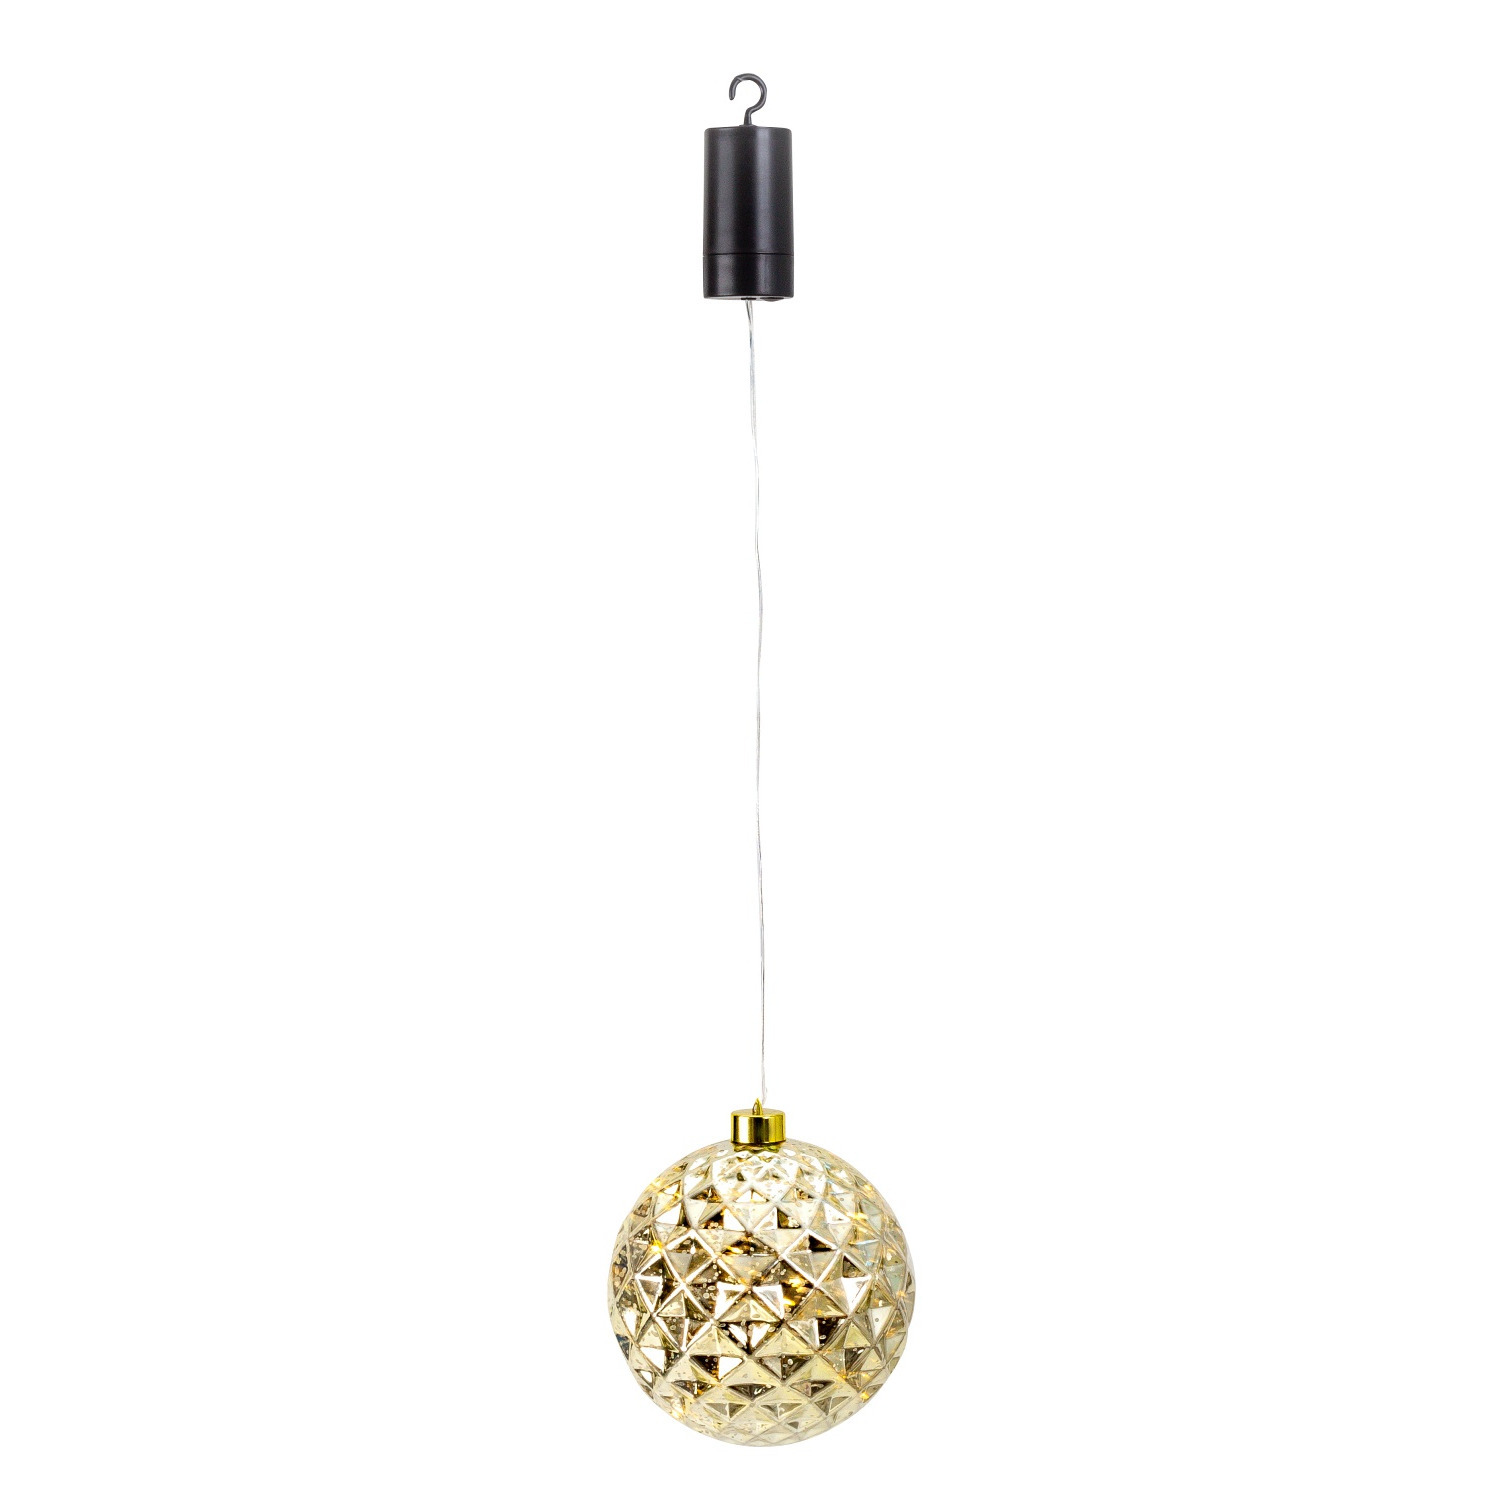 IKO kerstbal goud met led verlichting- D15 cm aan draad